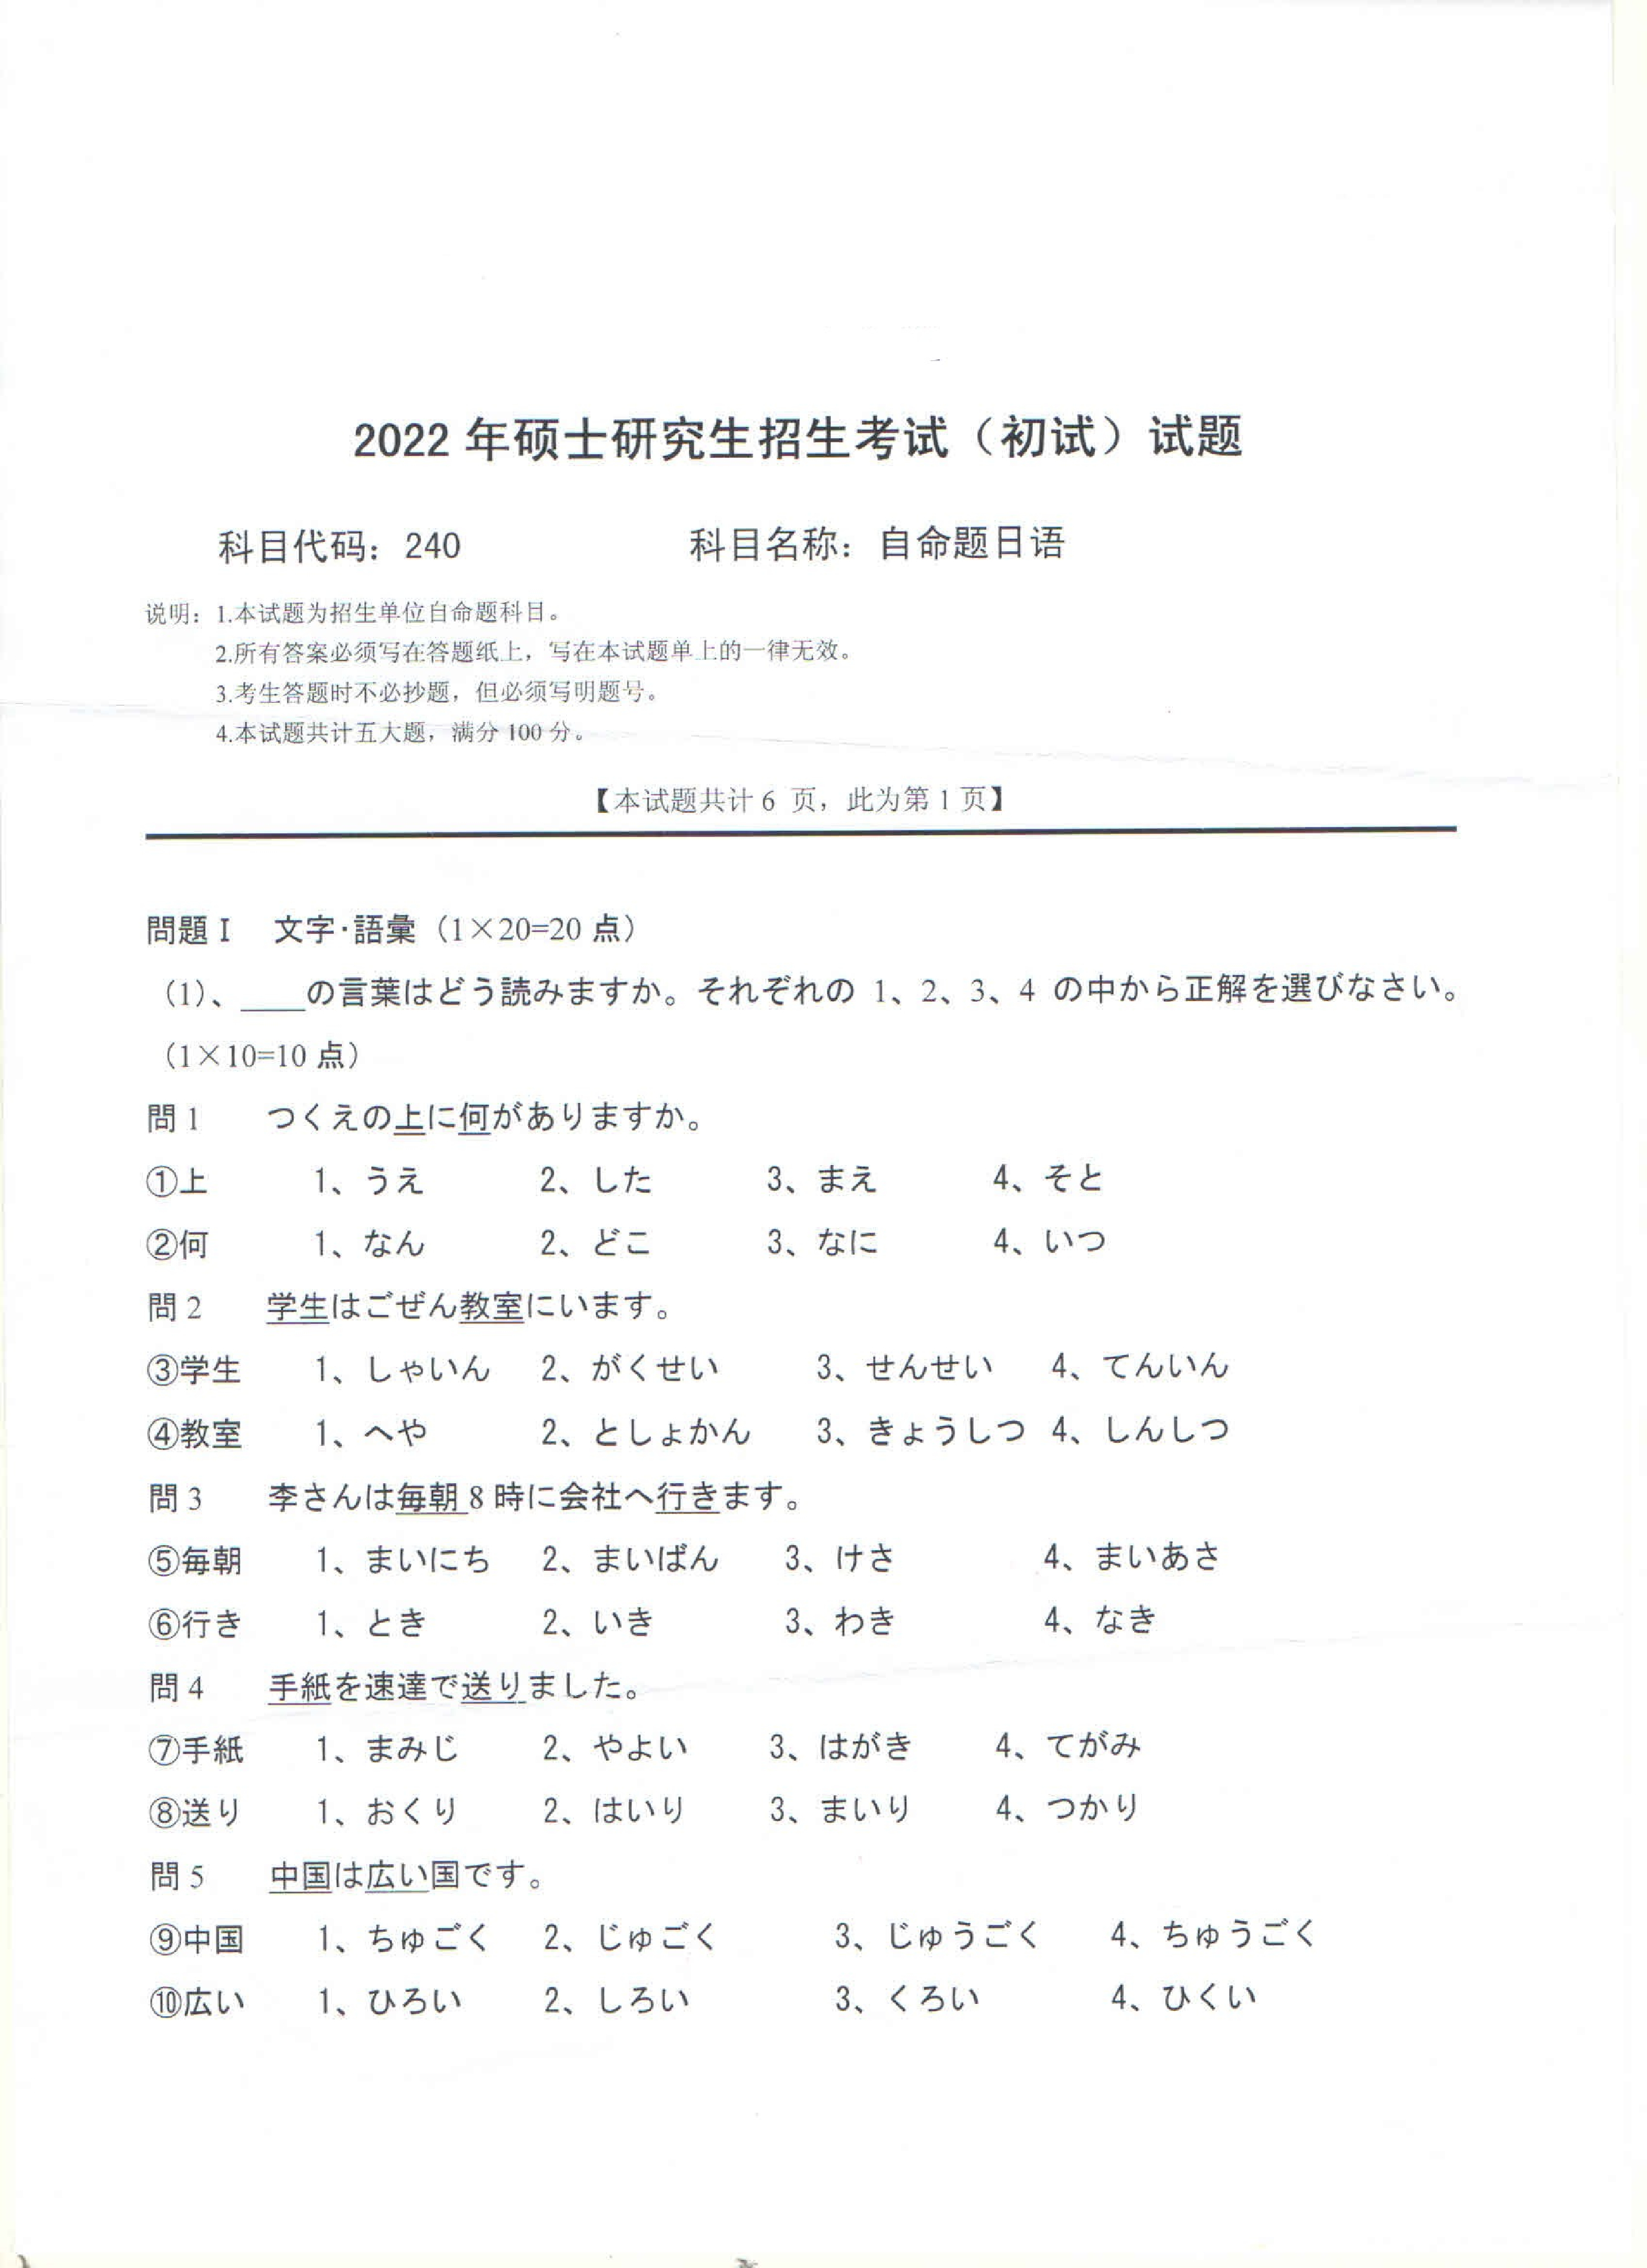 2022考研真题：西南科技大学2022年考研科目 240 自命题日语 考试真题第1页